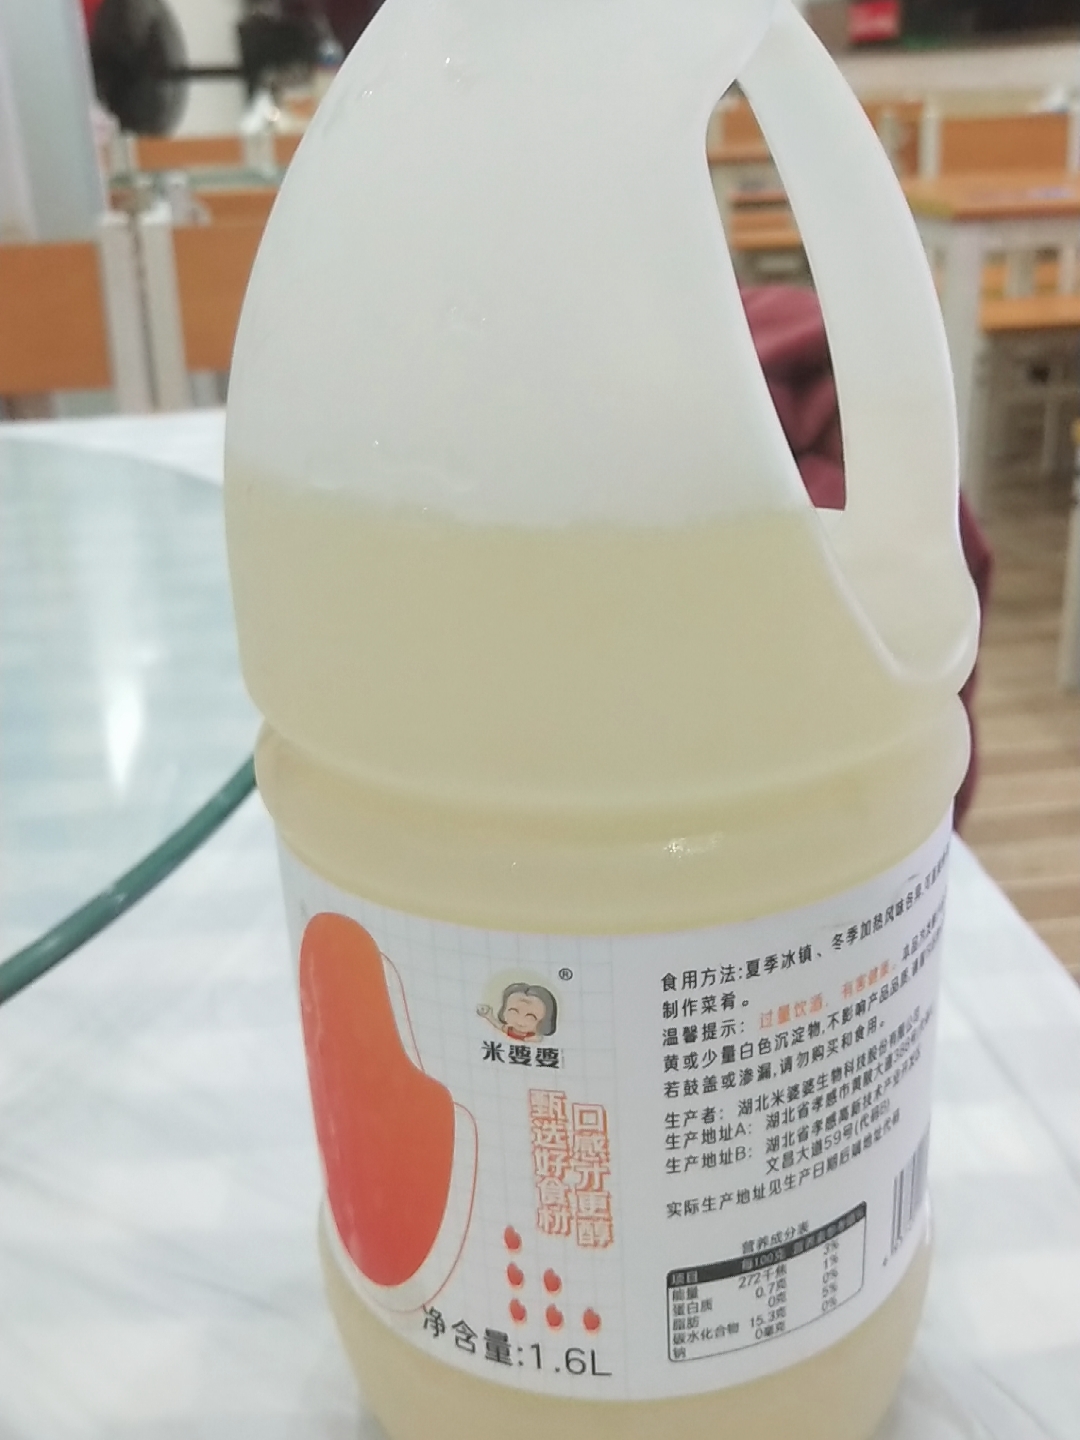 米婆婆低度甜米酒1.6L大瓶装测评分享